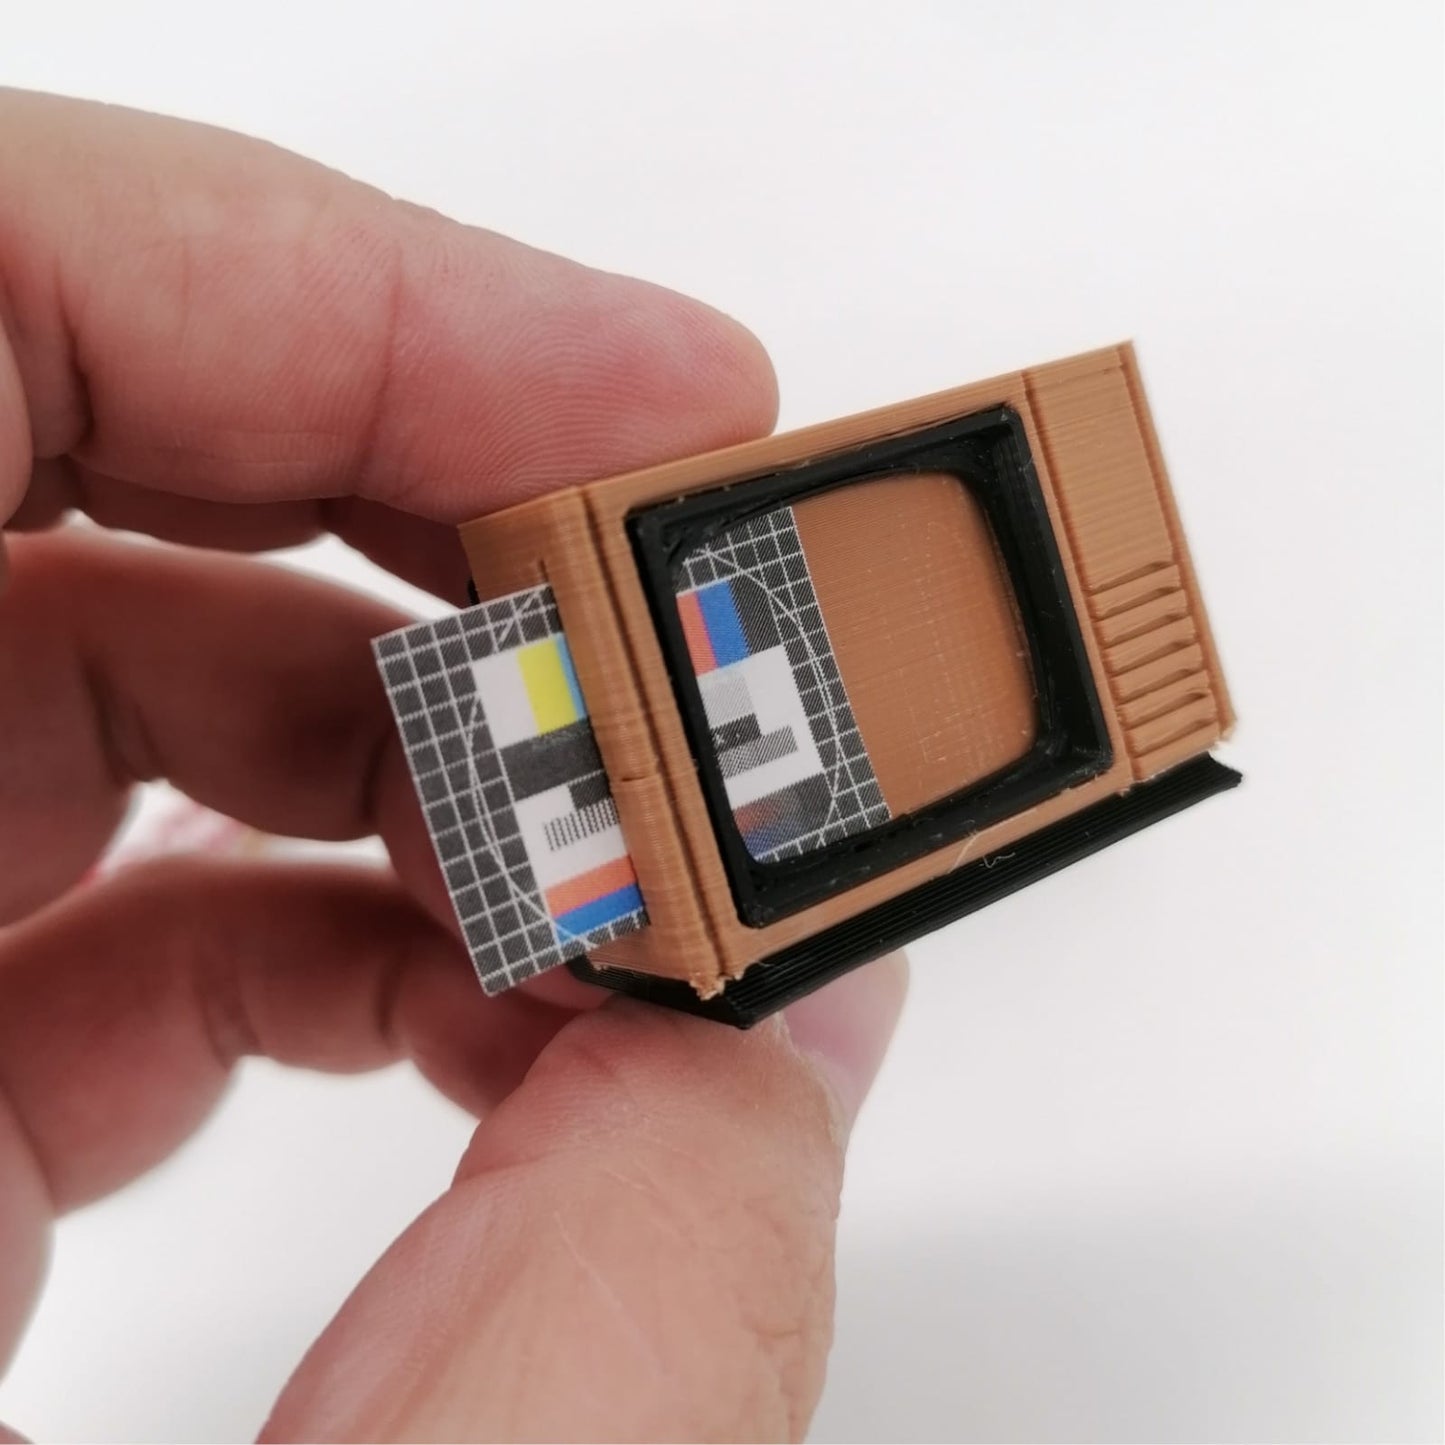 Miniatuur 80s 1:12 schaal multimediaset